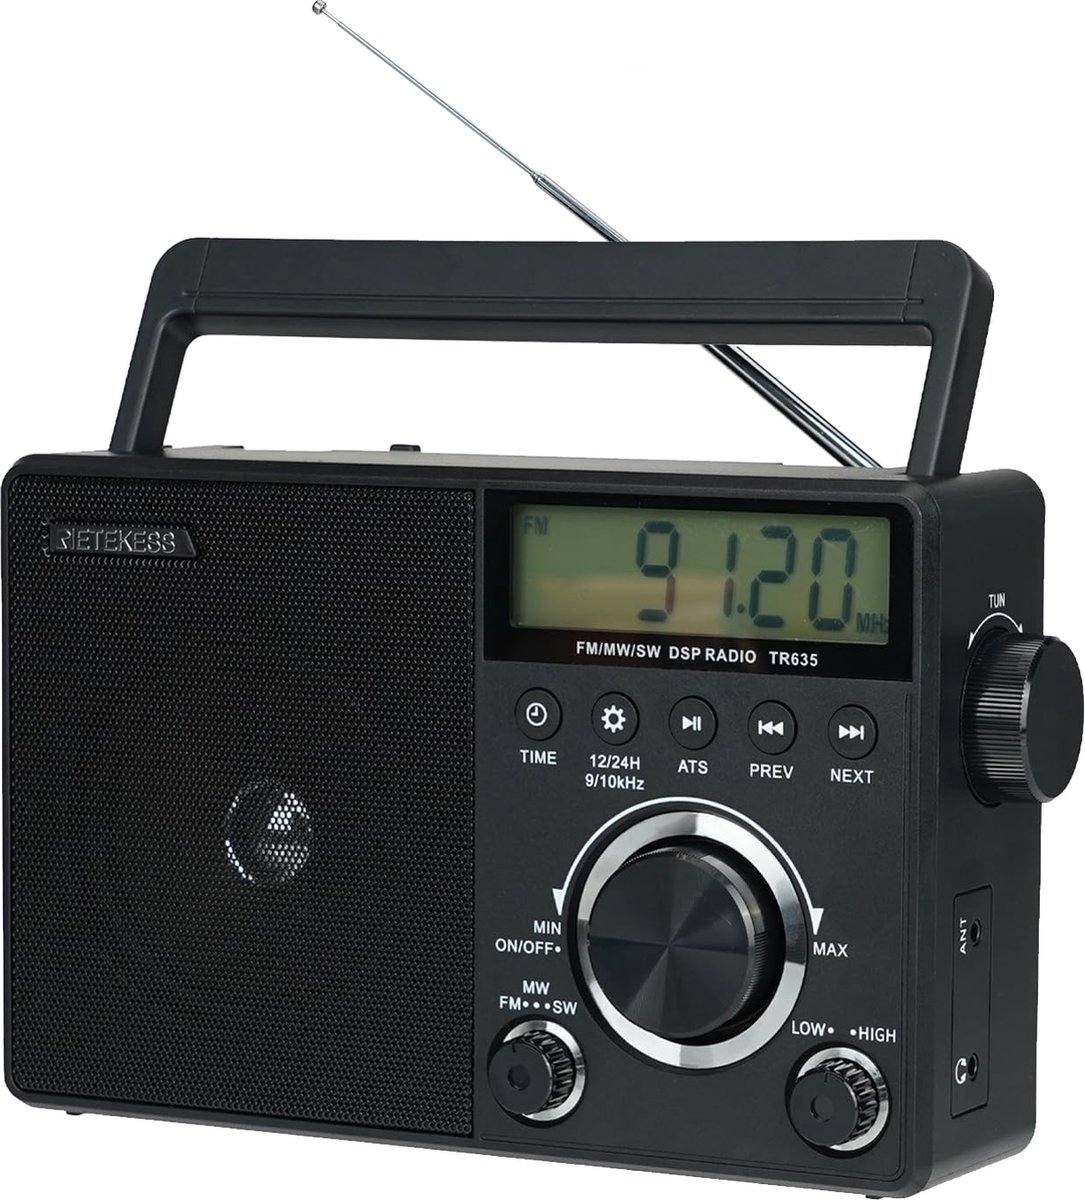 Beroli - Retekess TR635 - Portable Shortwave Radio - FM/AM/SW Transistor Battery Radio met Uitstekende Ontvangst - Hoofdtelefoonaansluiting - Grote Luidspreker - Eenvoudig - Radio Voor Ouderen (Zwart)